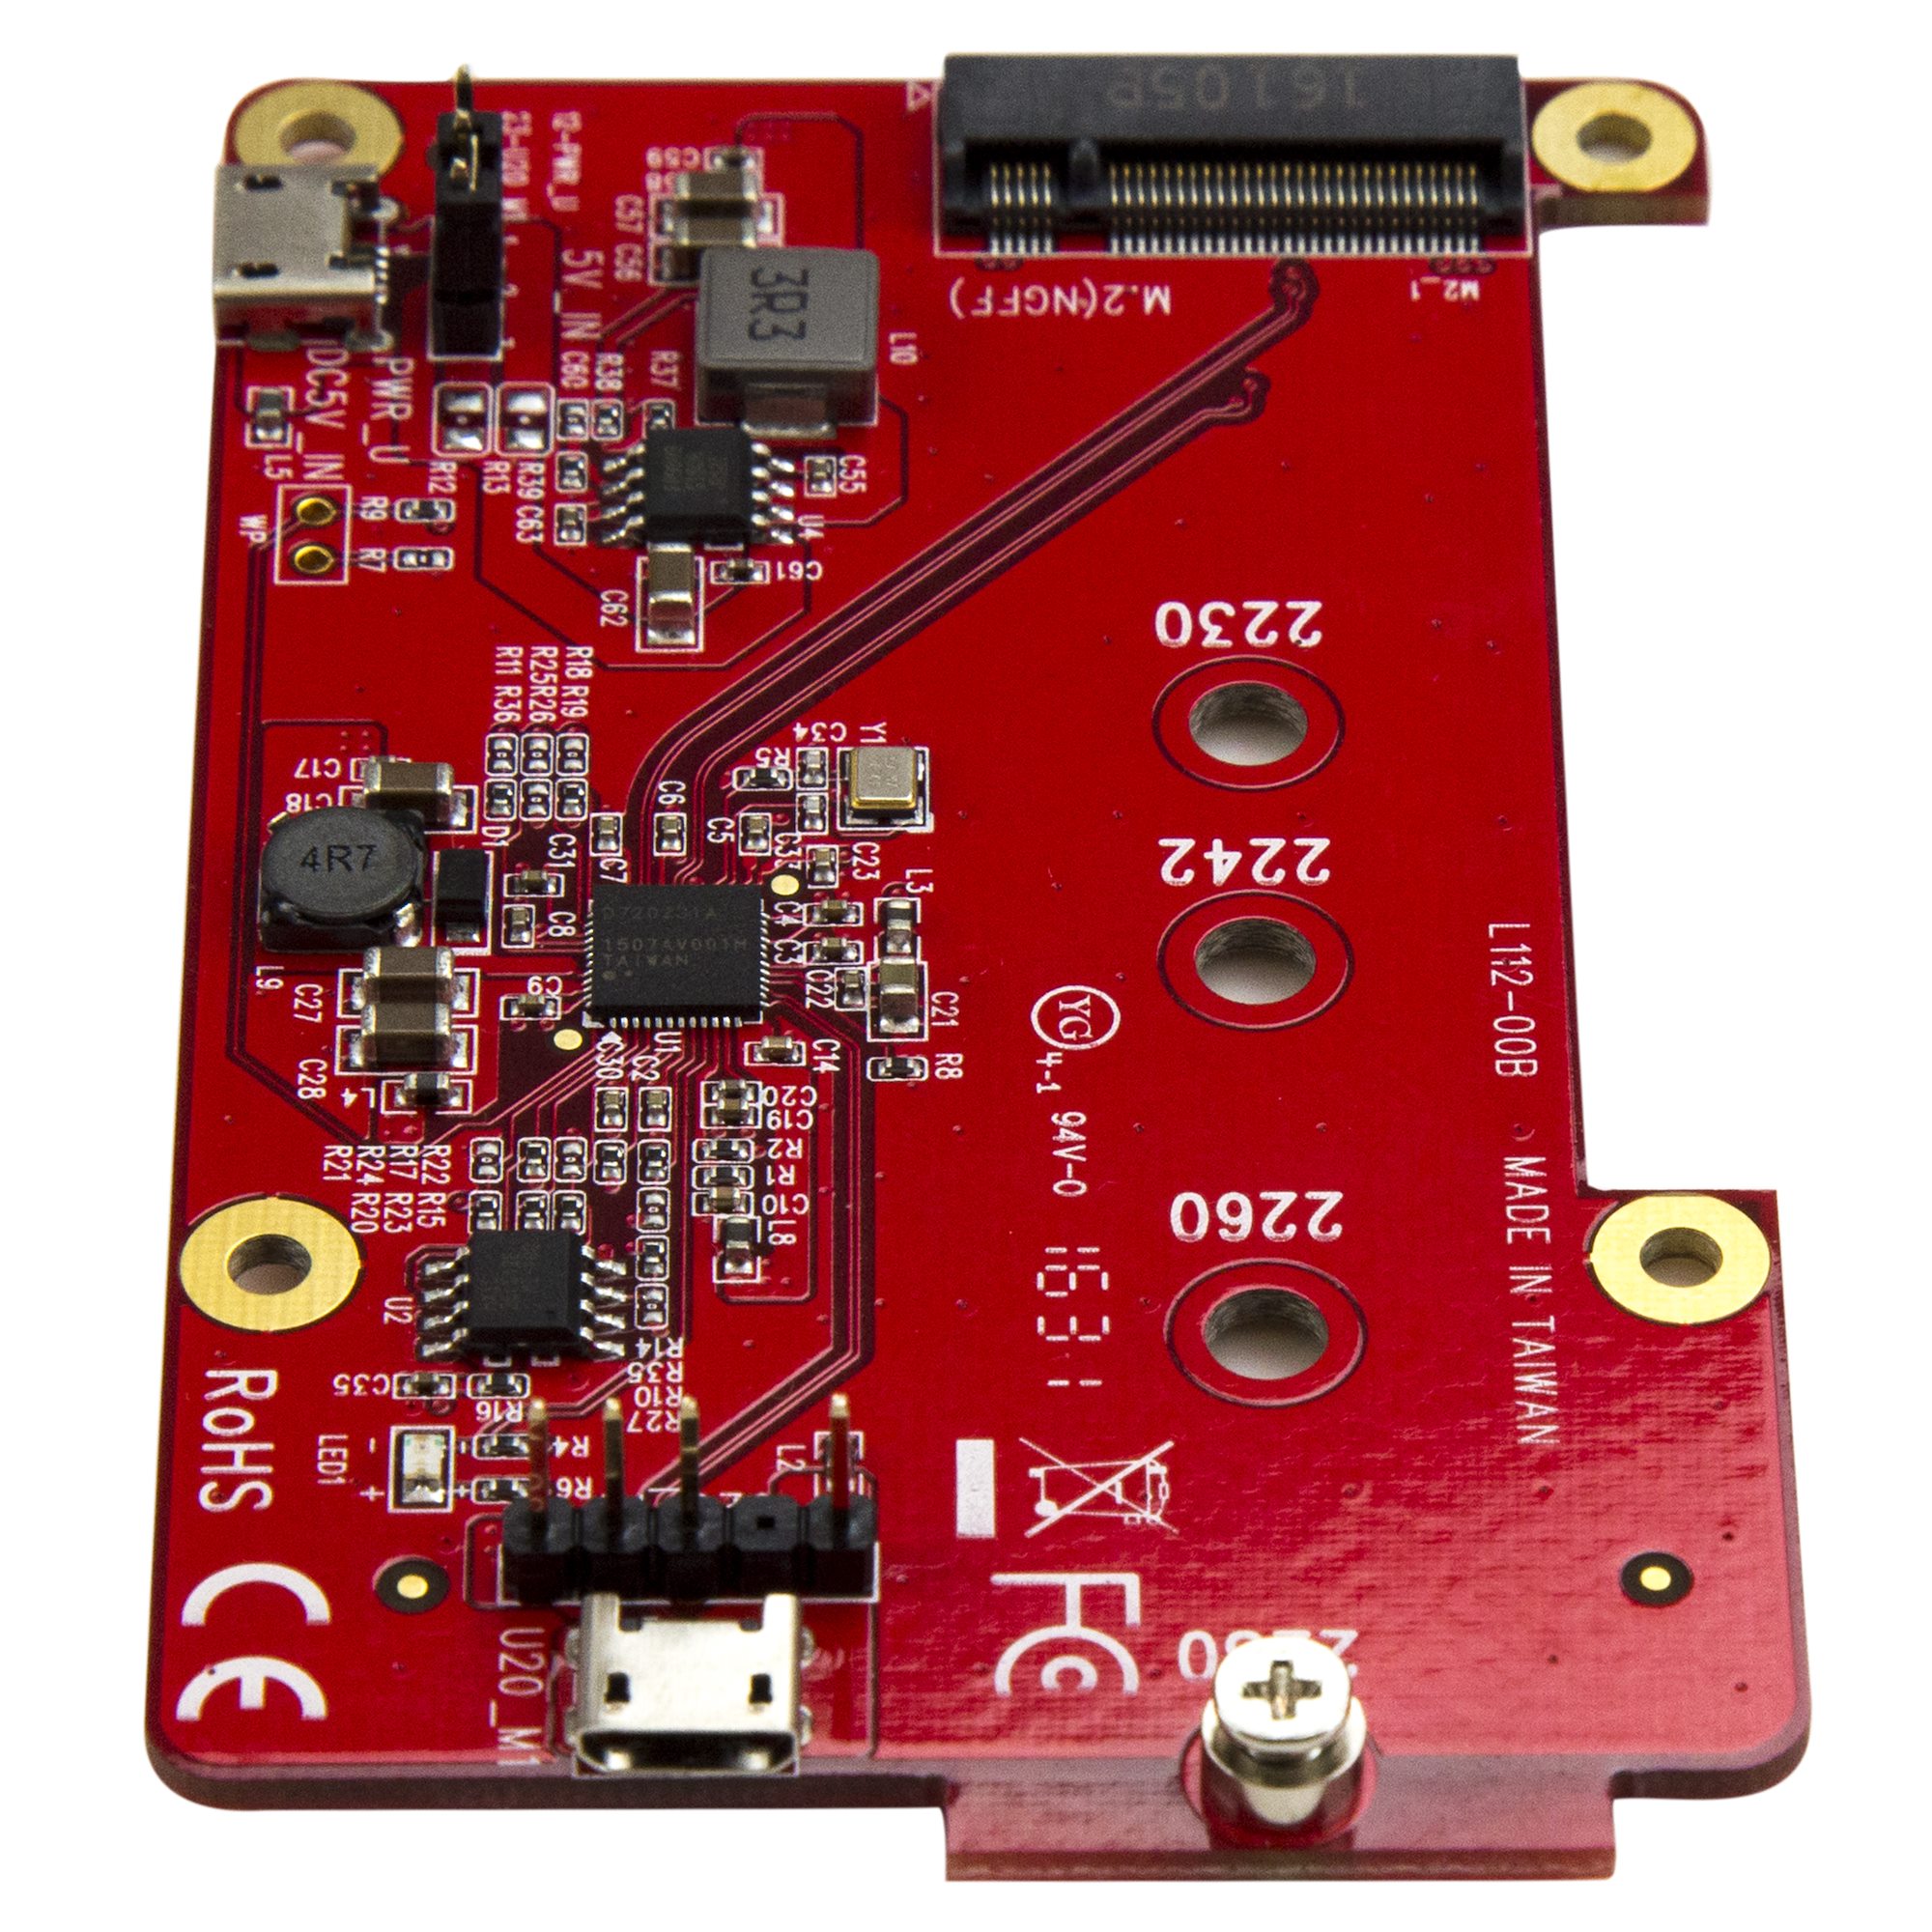 Carte adaptateur d'interface M.2 NGFF SATA SSD dans un système Raspberry Pi  USB 2.0